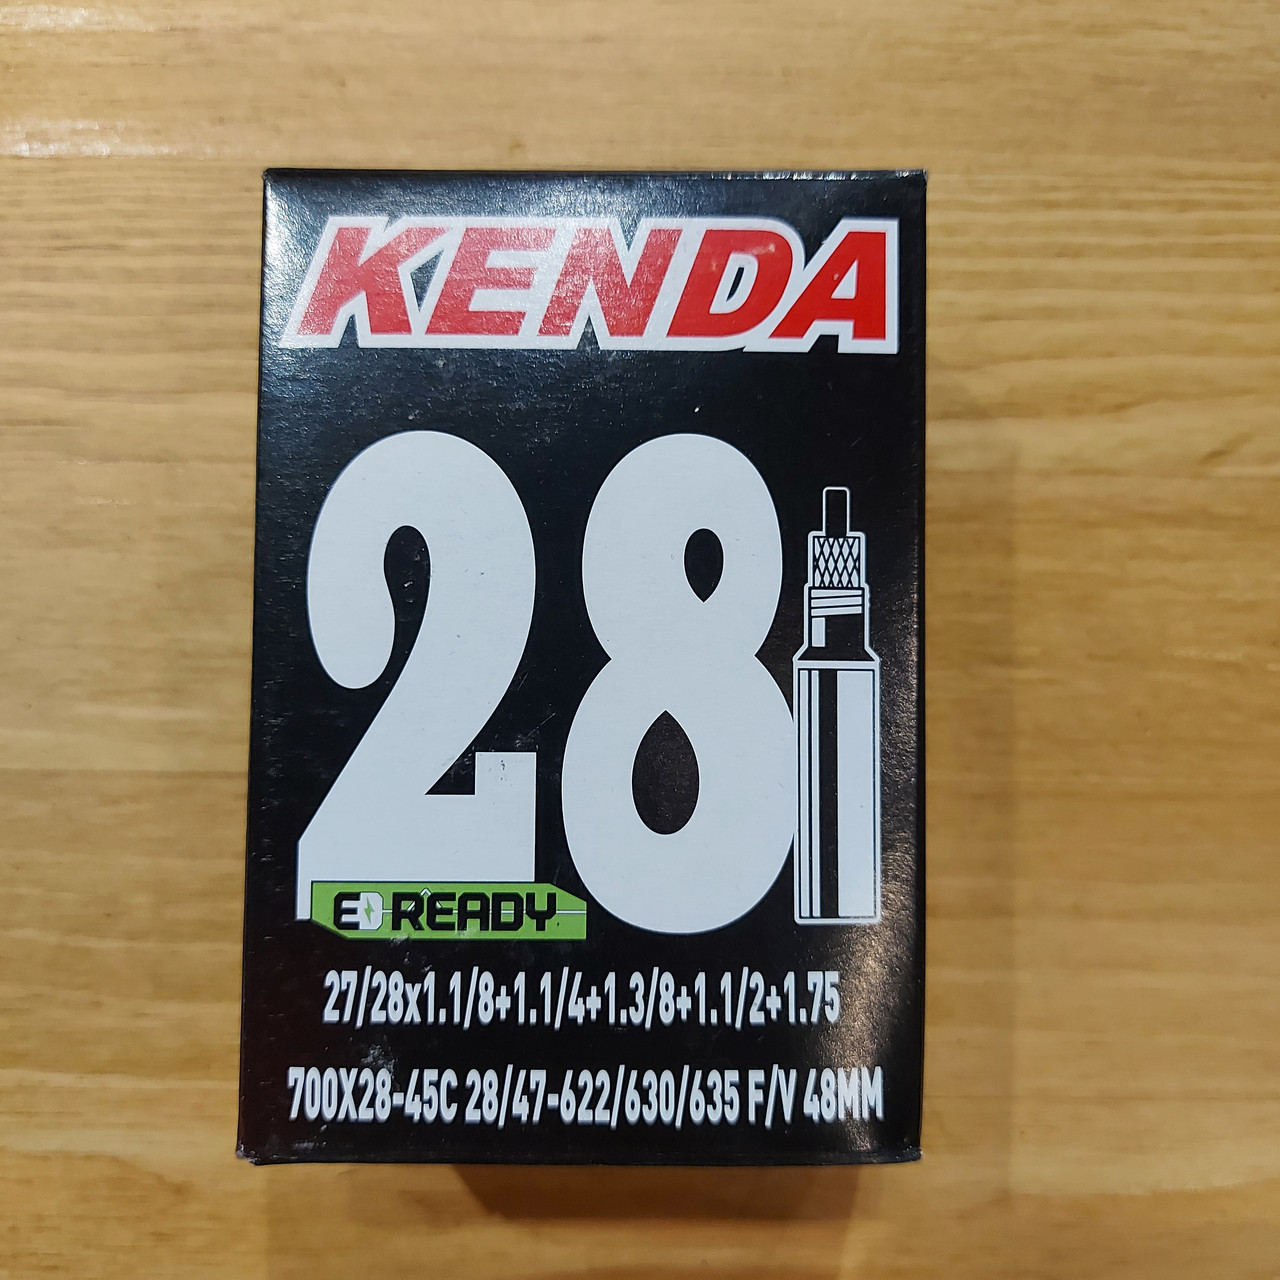 Велосипедная камера "Kenda" 700x28-45C. 28/47-622/630/635. F/V. 48mm. Presta. Kaspi RED. Рассрочка